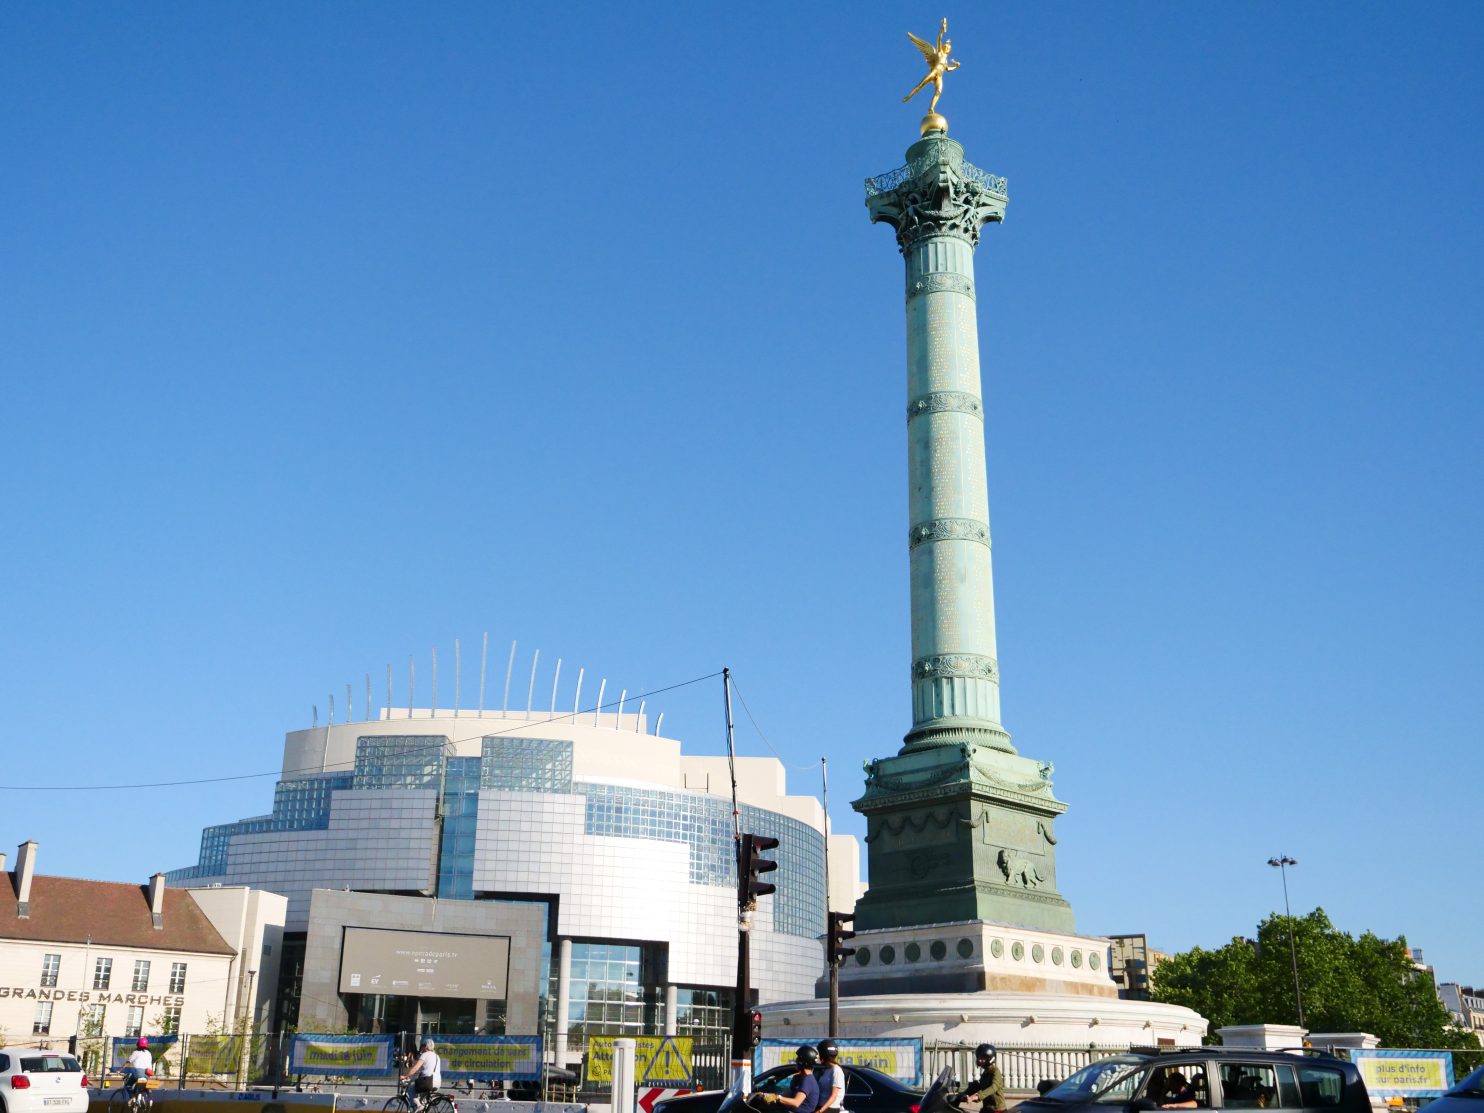 L'opéra Bastille et la colonne de Juillet sur la place de la Bastille dans le 11 ème